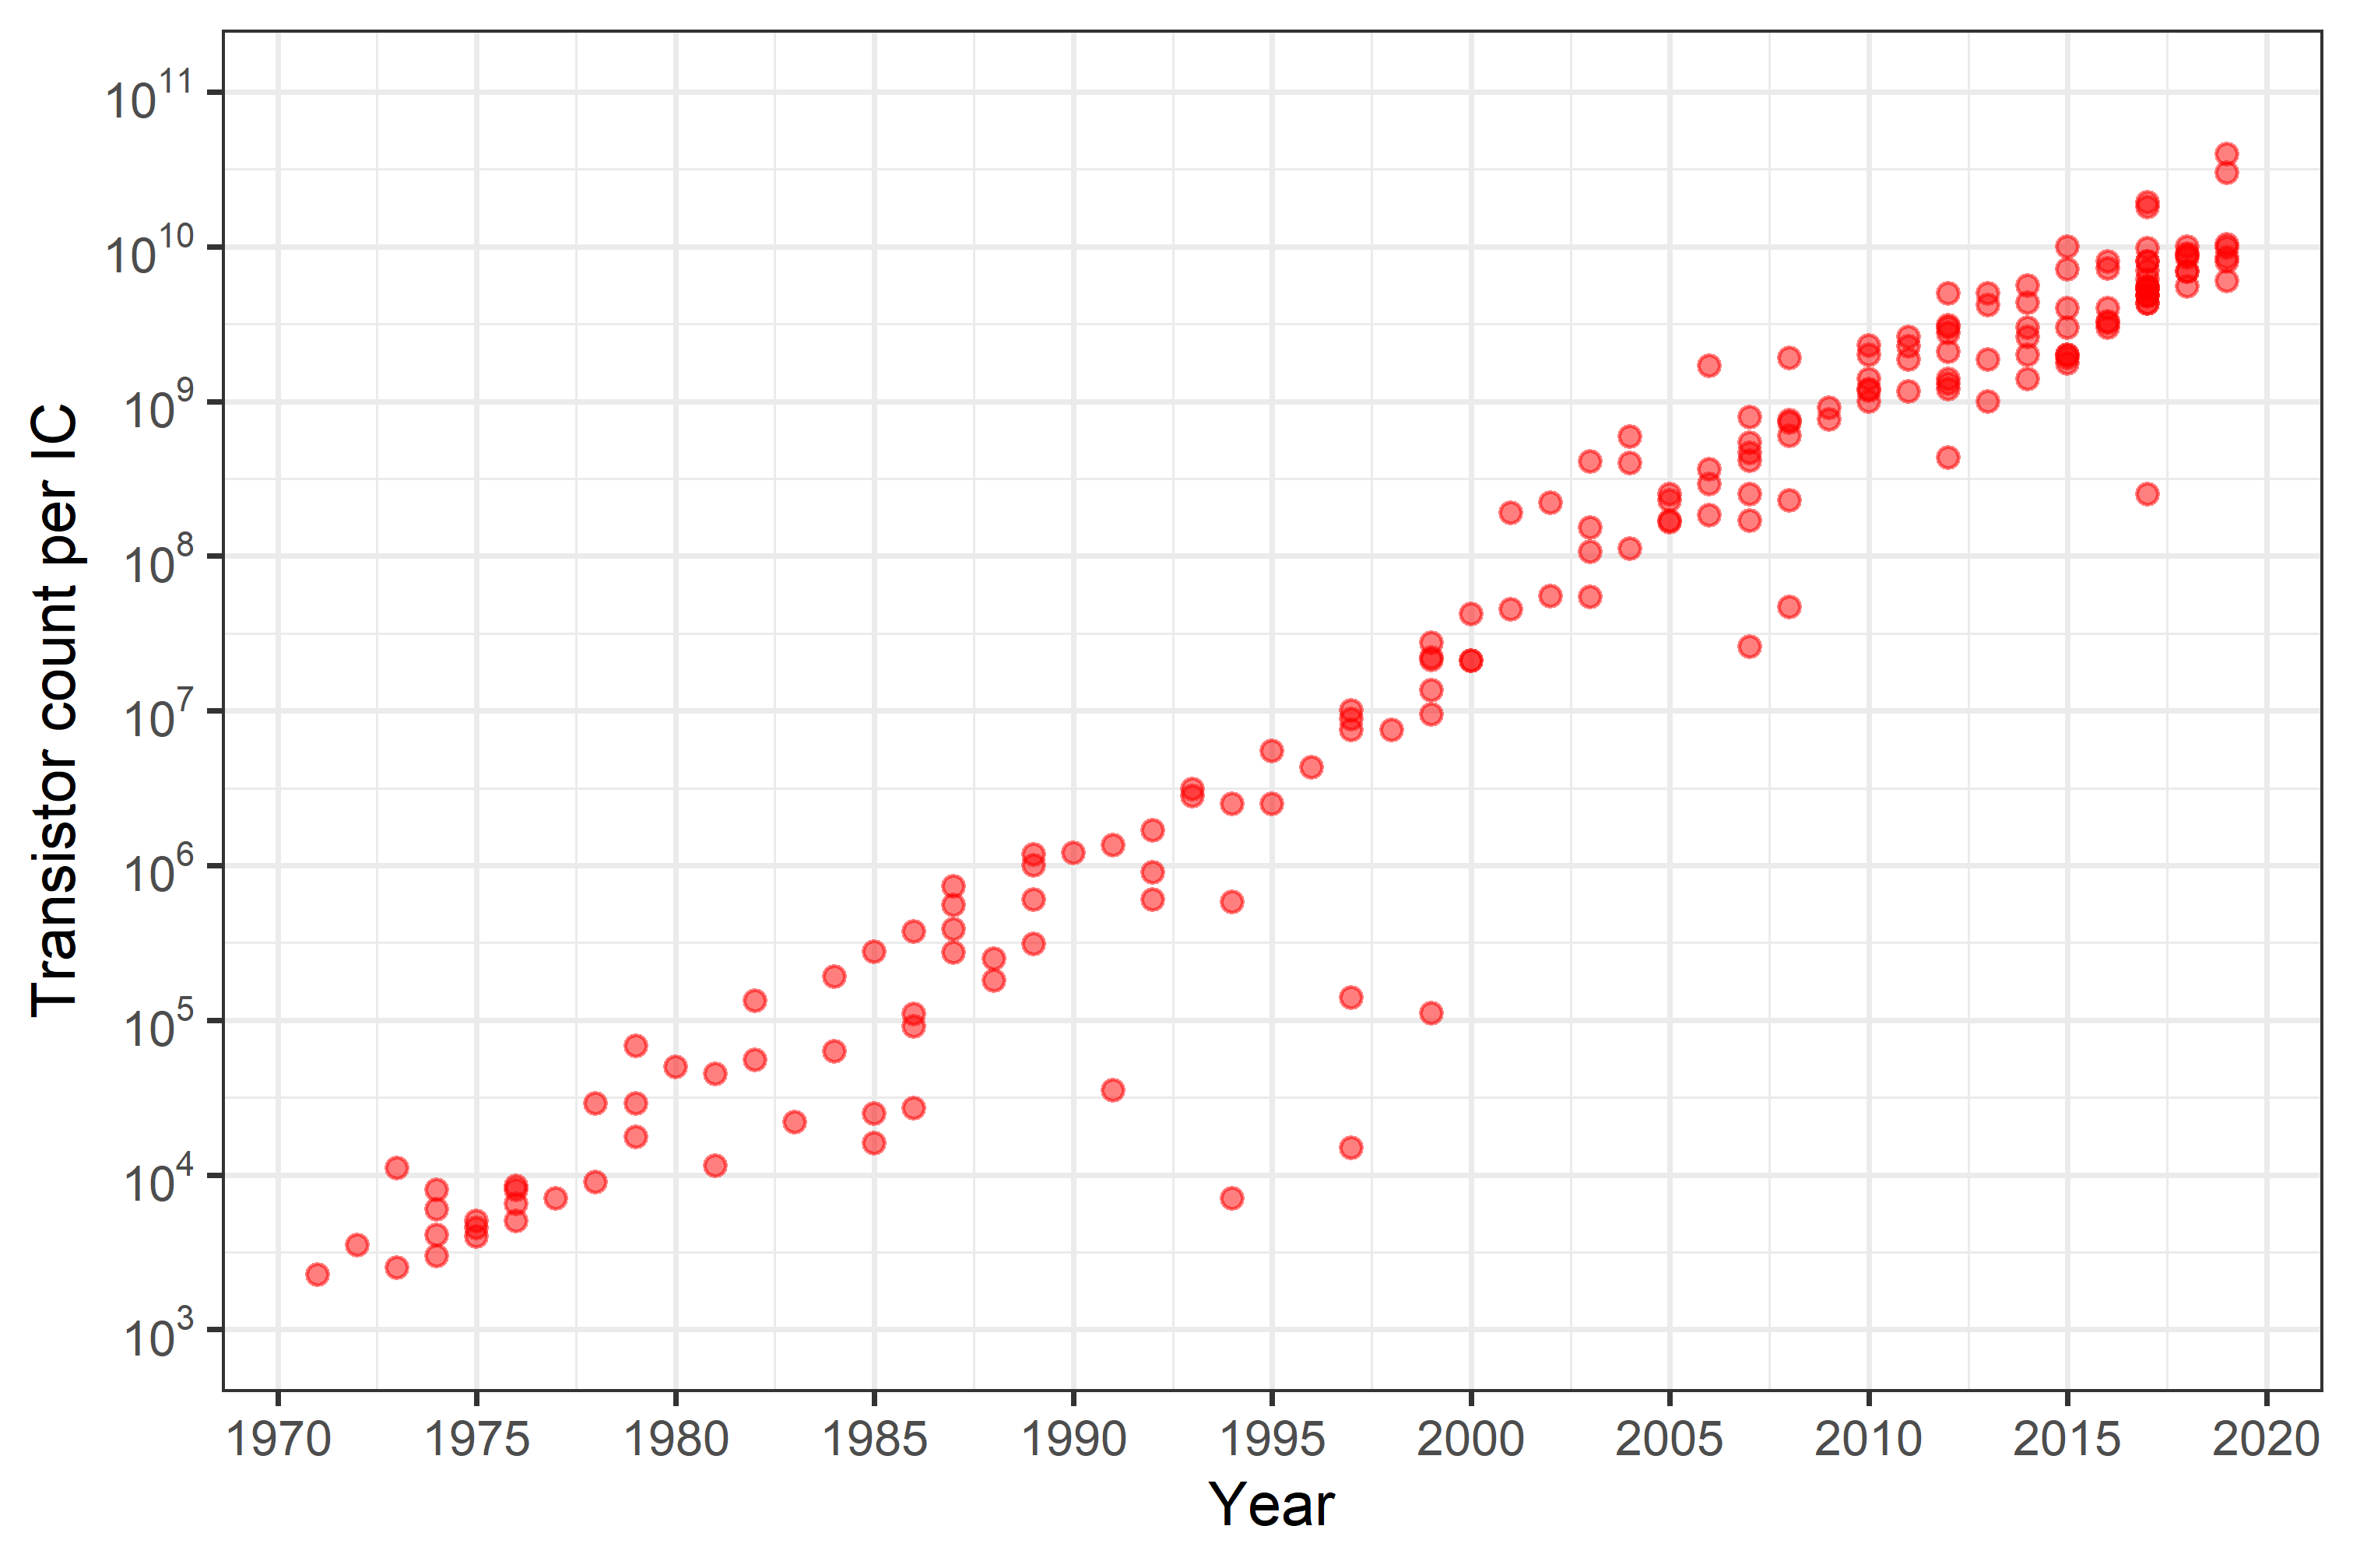 データはWikipediaから引用。横軸に年単位の時間、縦軸に単位ICあたりのトランジスタ数を示しています。単位ICあたりのトランジスタ数が指数関数的に増加していることがこの図から把握できます。